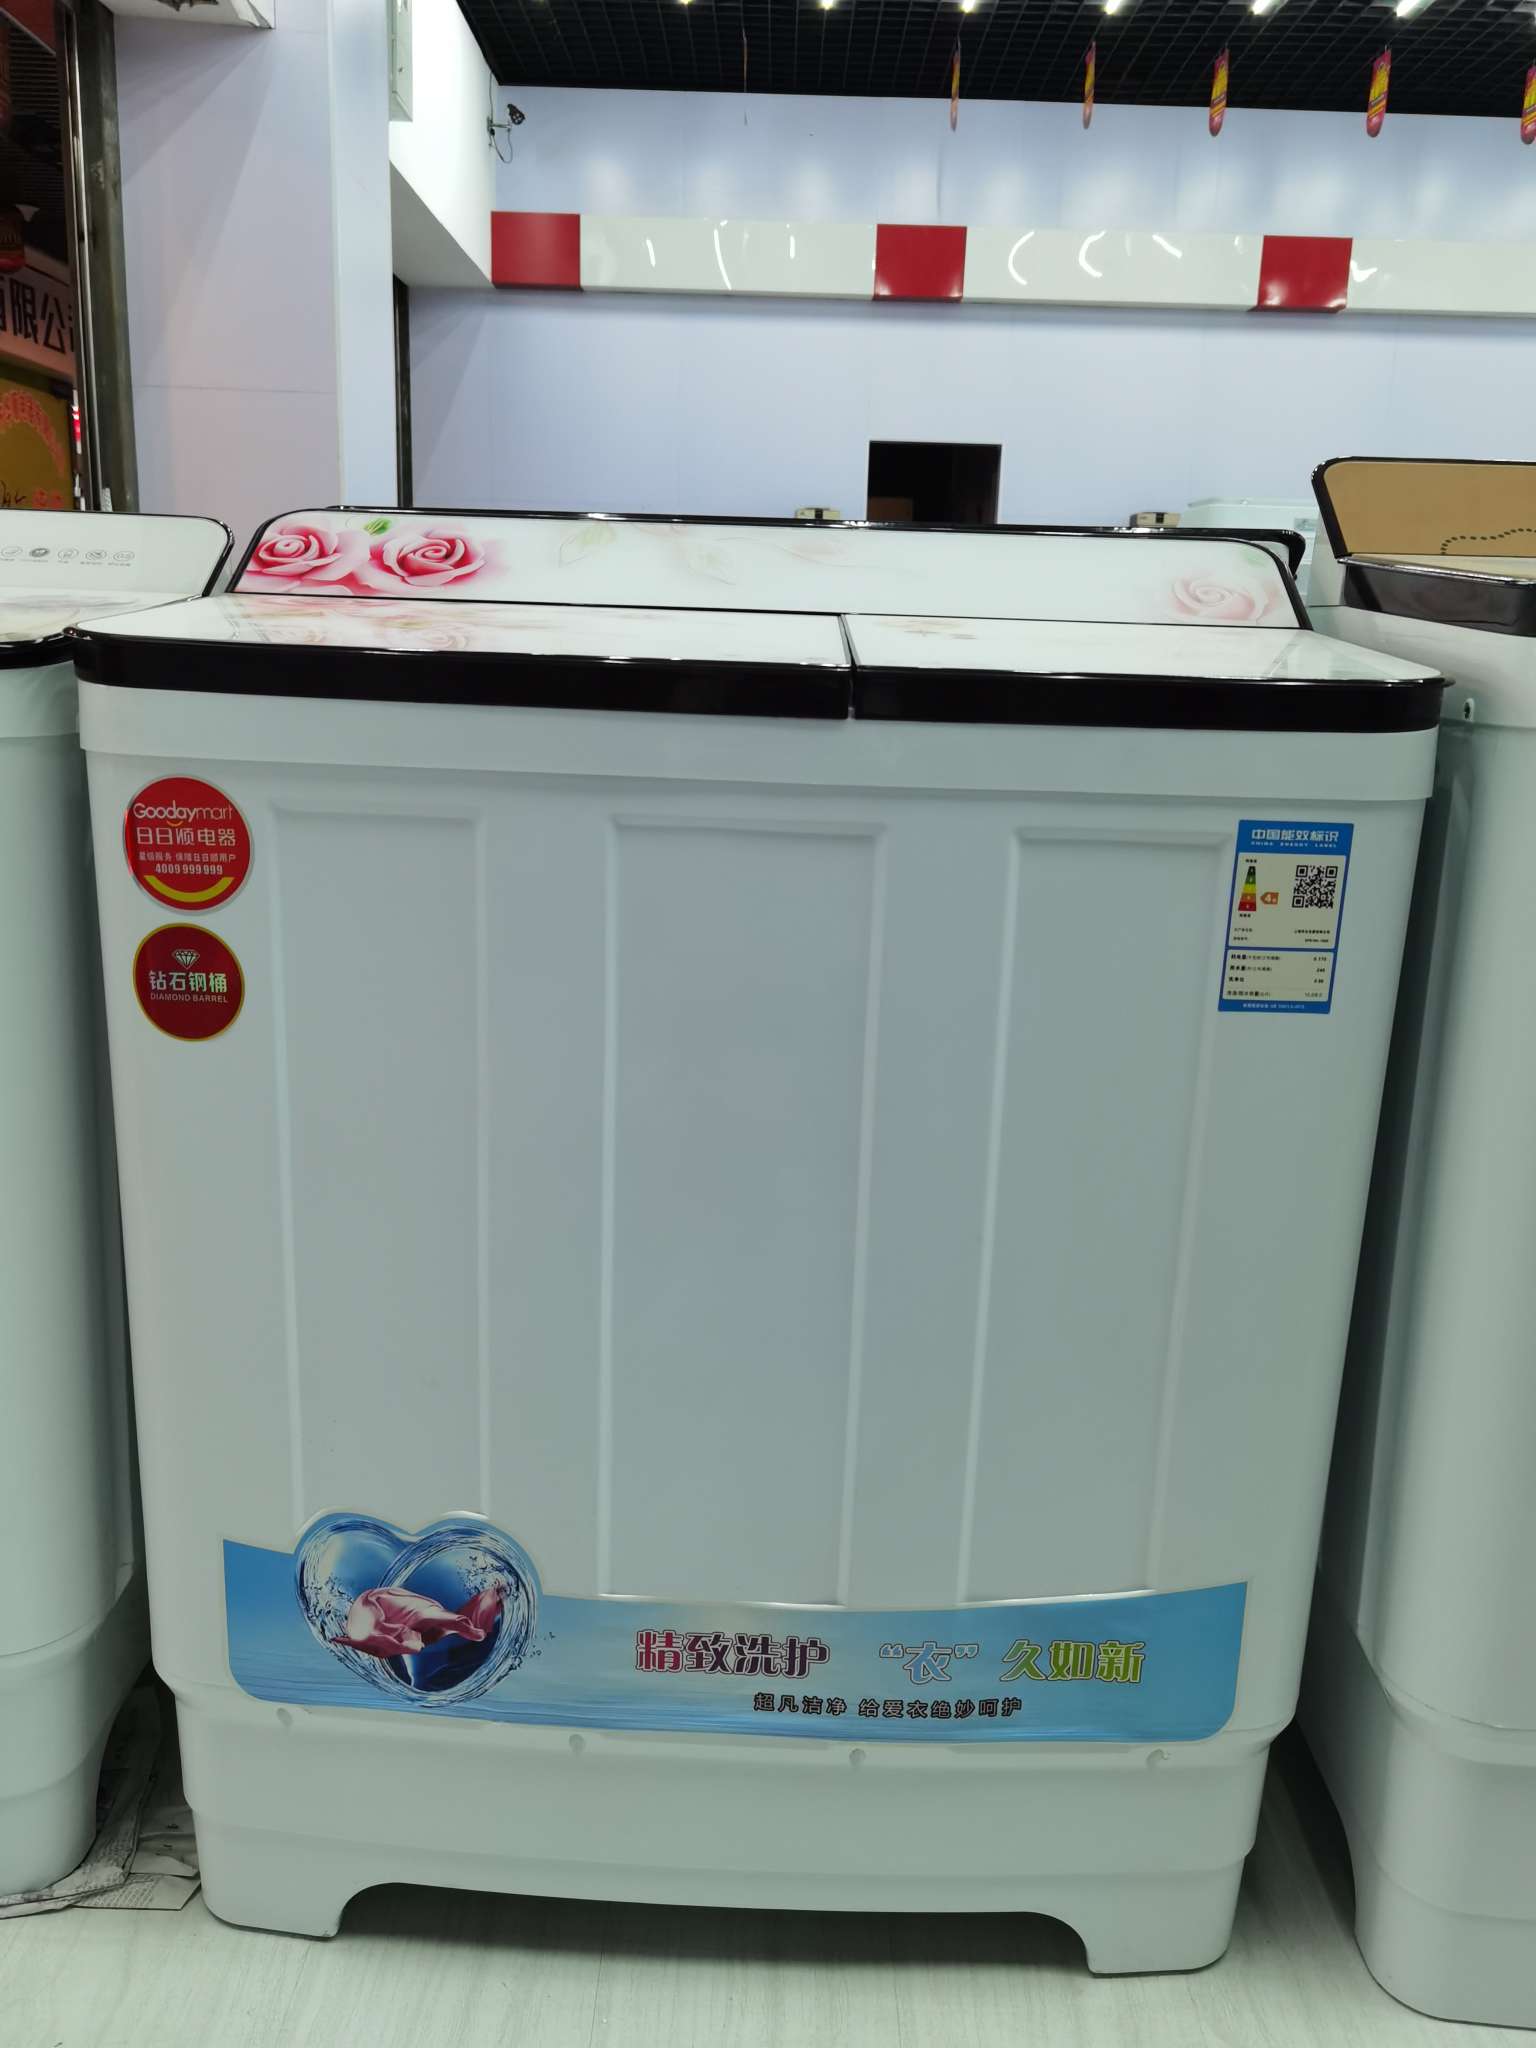 上海华生半自动洗衣机